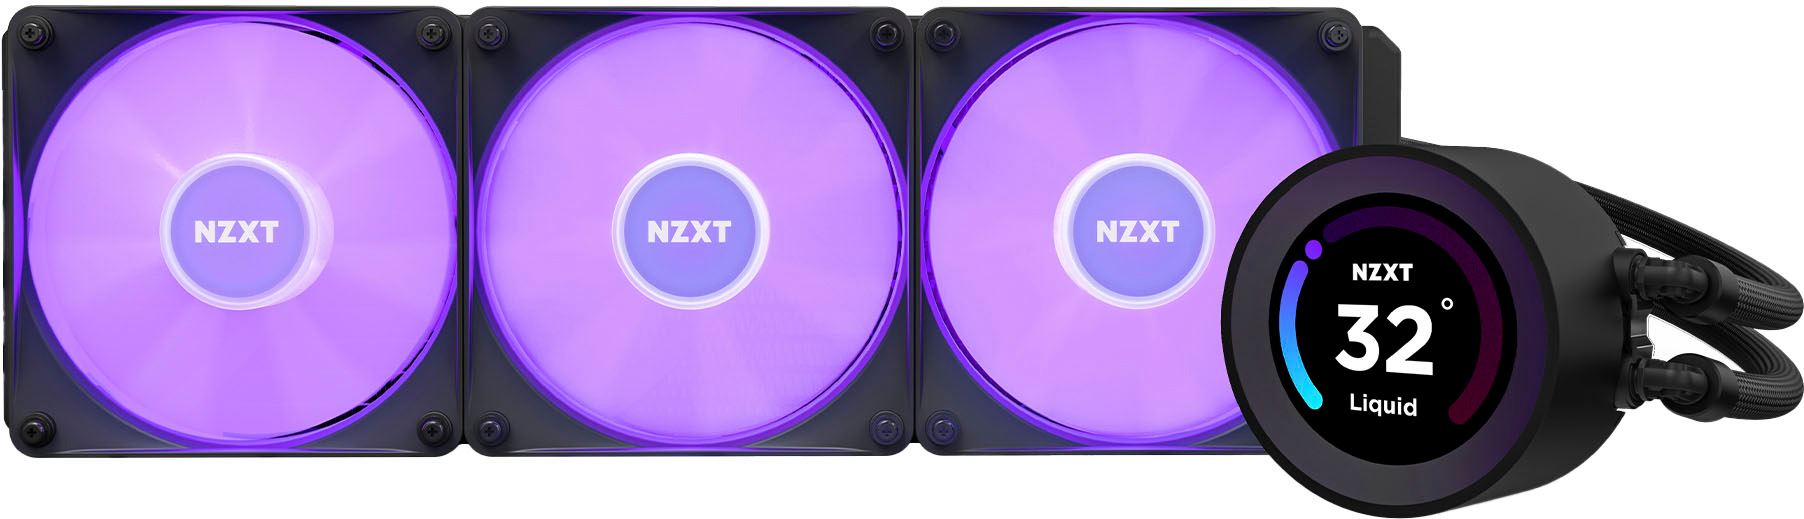 NZXT Kraken 120mm Liquid Cooler with 1 LCD Display Black RL-KR120-B1 -  Best Buy